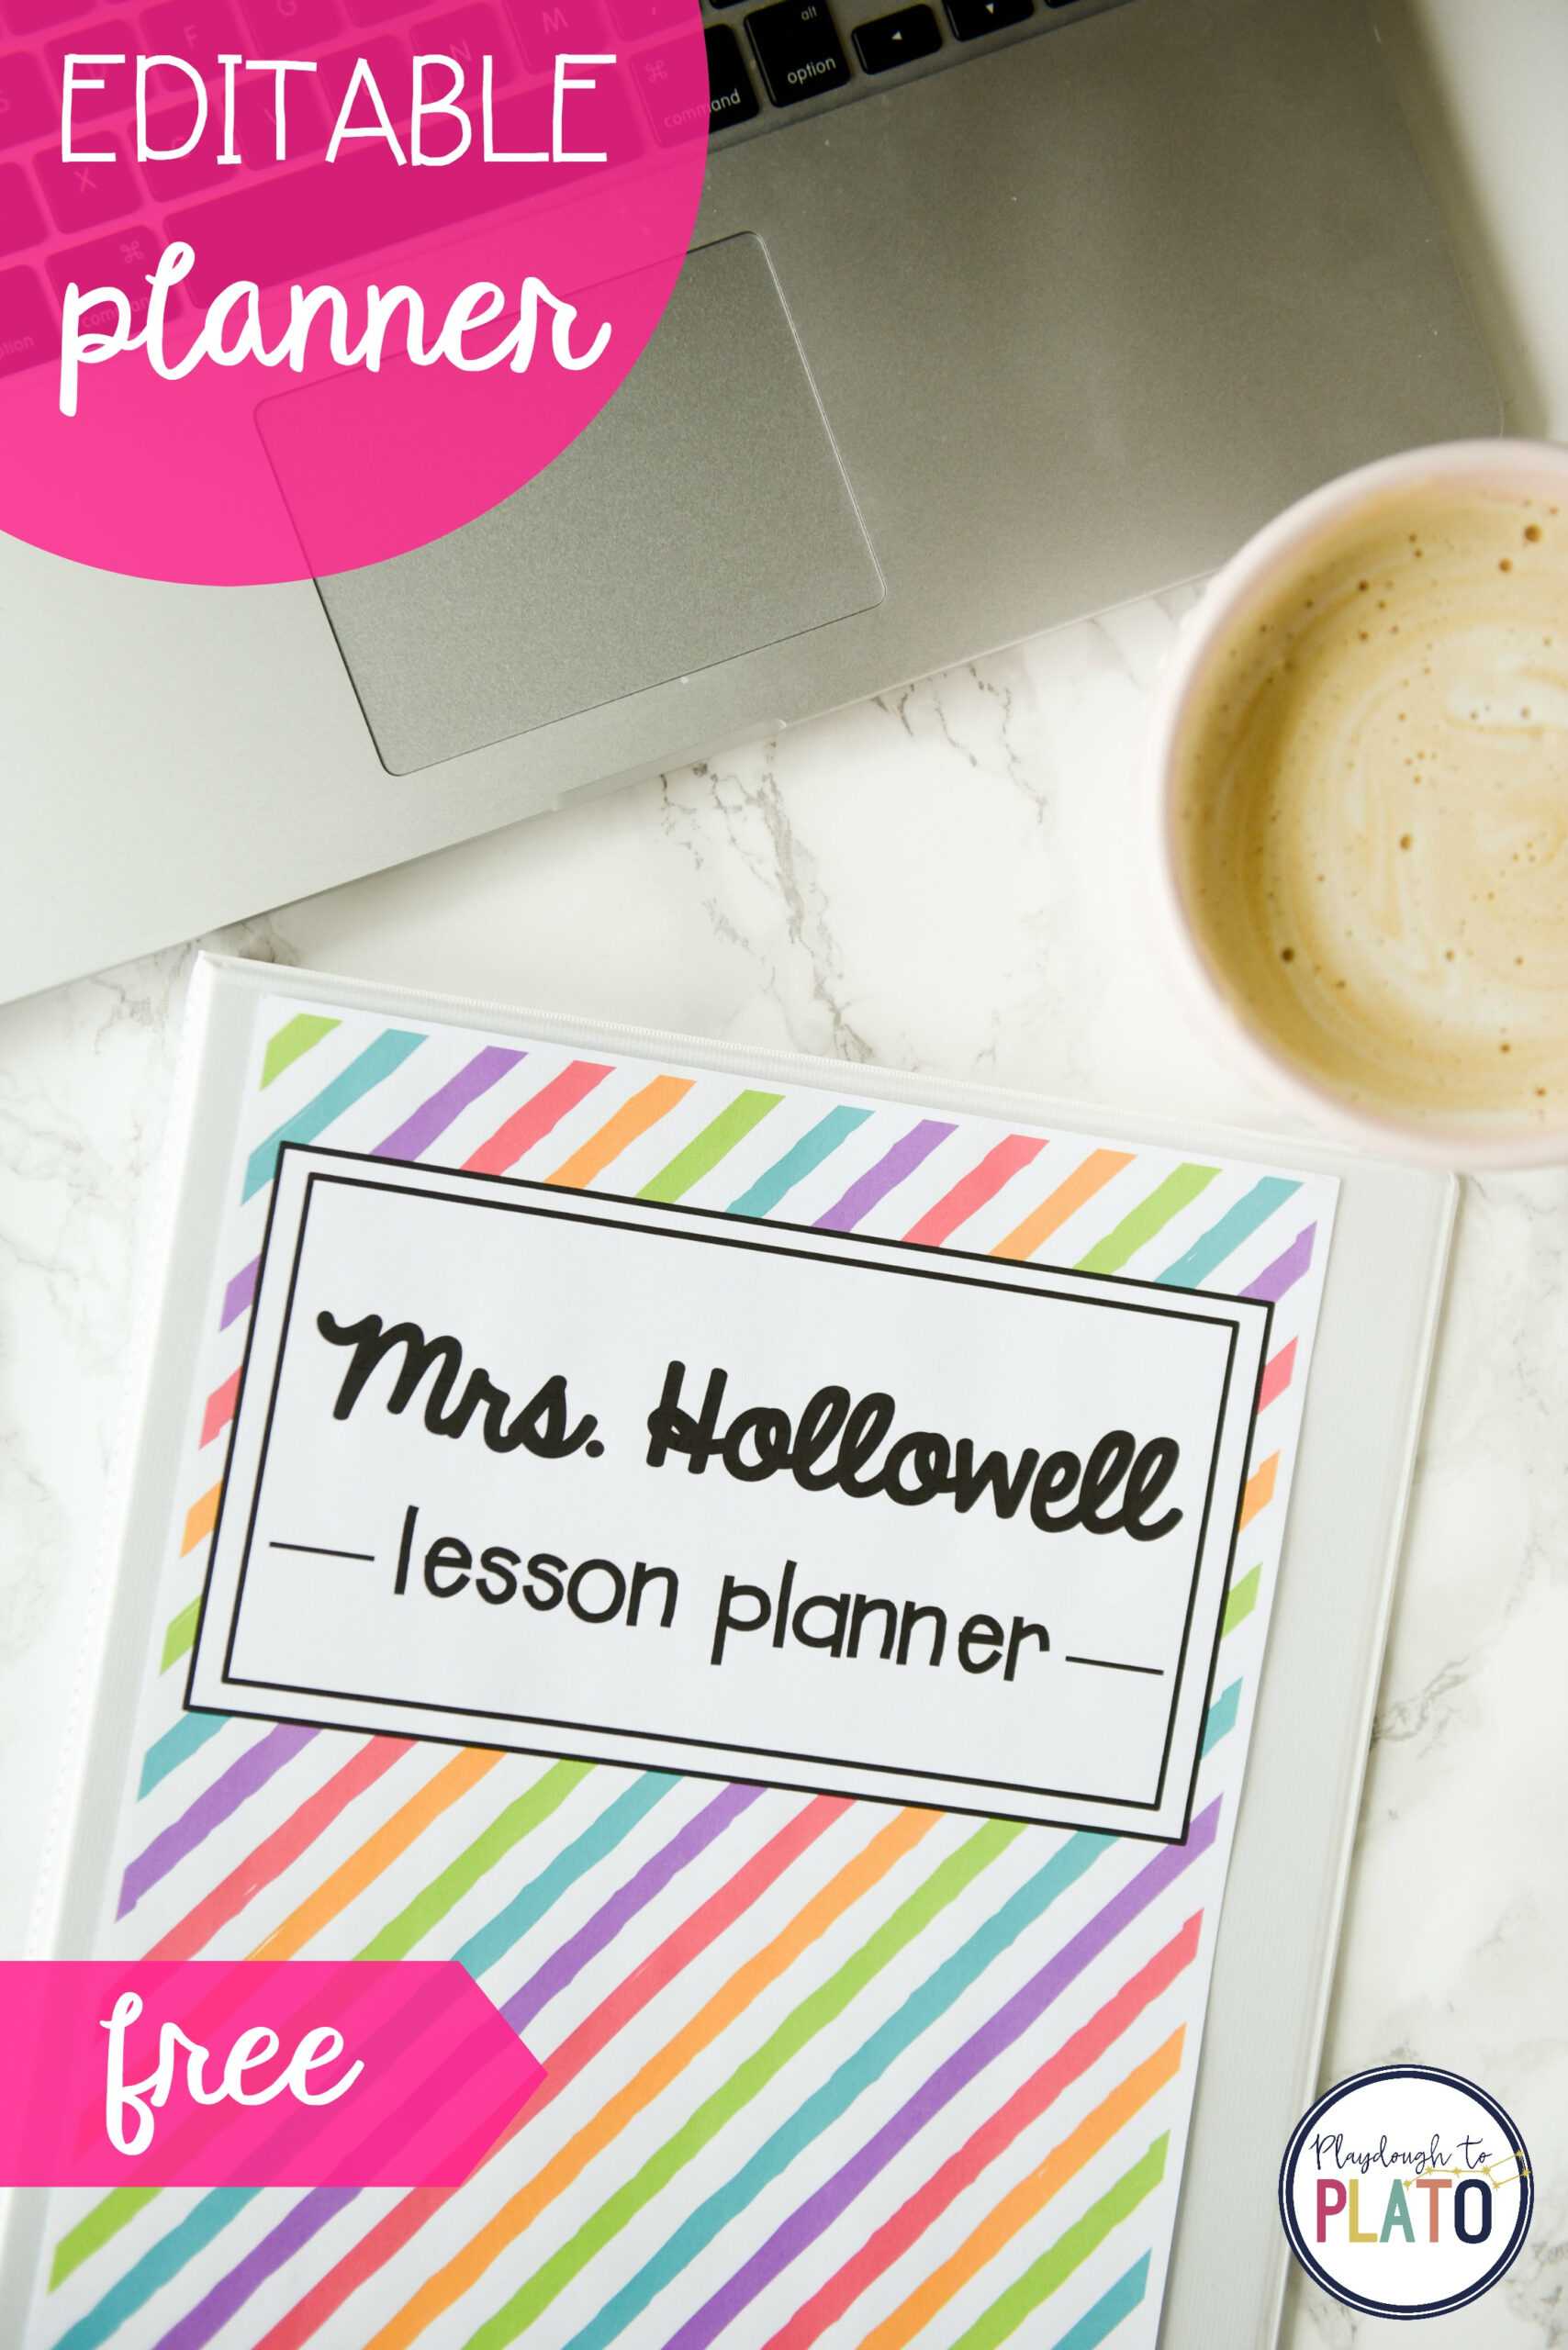 Free Teacher Planner – Playdough To Plato Inside Teacher Plan Book Template Word